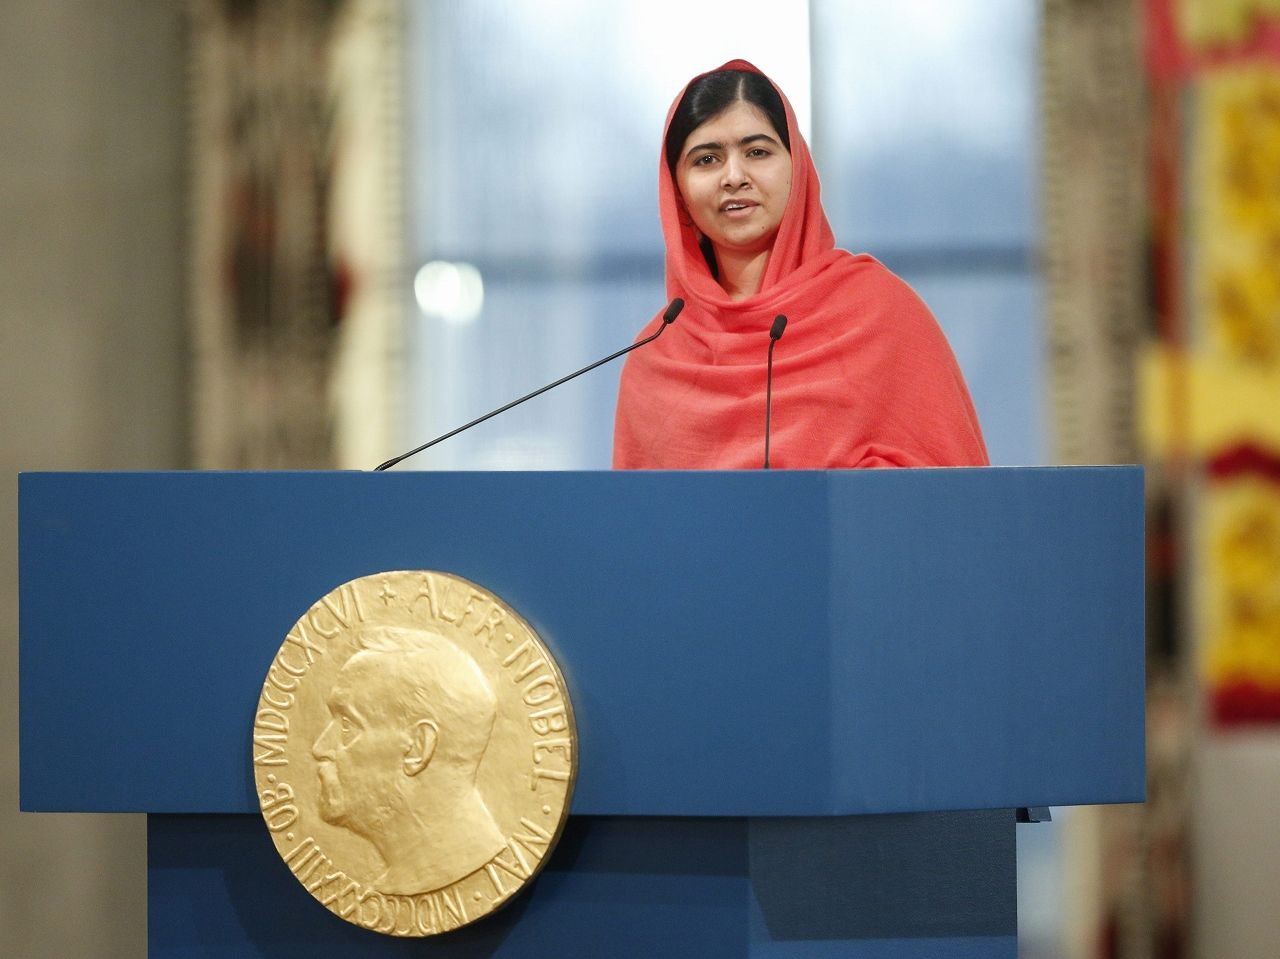 史上最年少でノーベル平和賞を受賞 マララ ユサフザイが感動のスピーチ